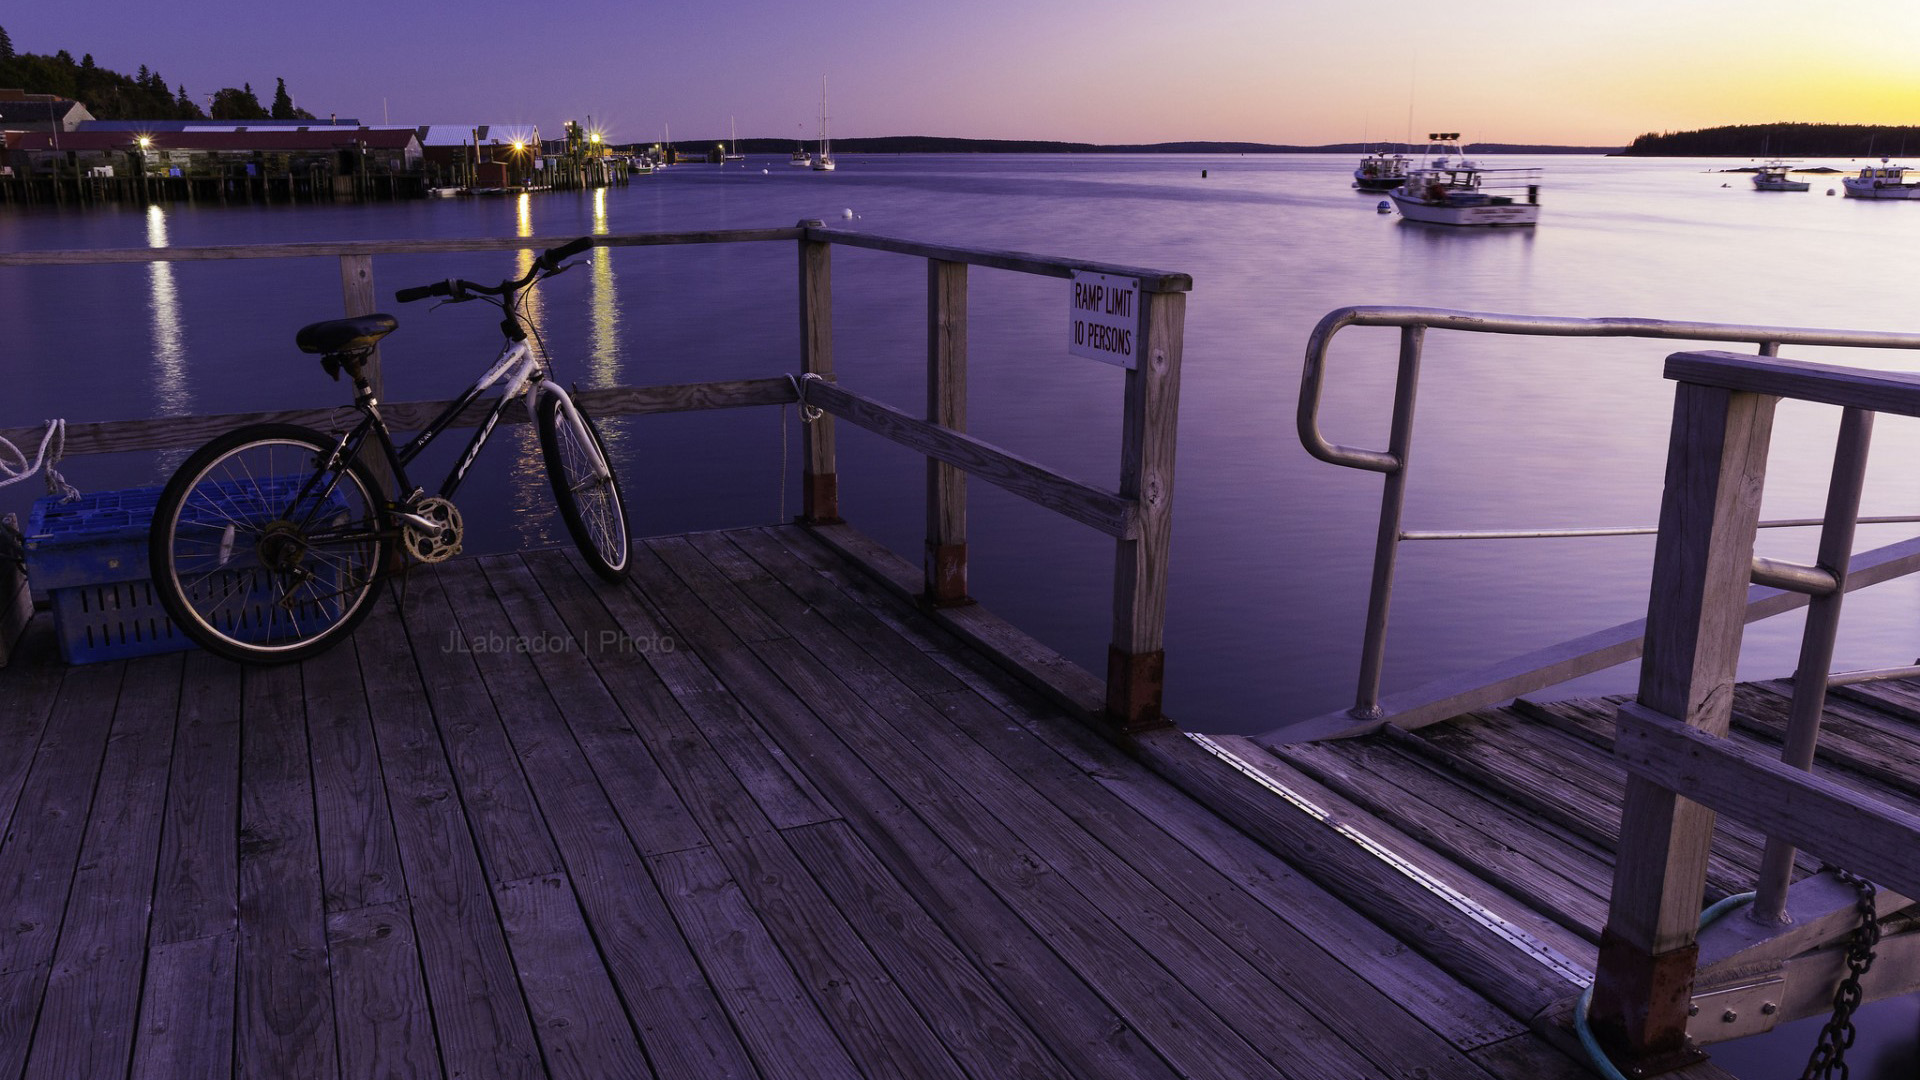 货运码头,自行车,日落,海湾风景桌面壁纸